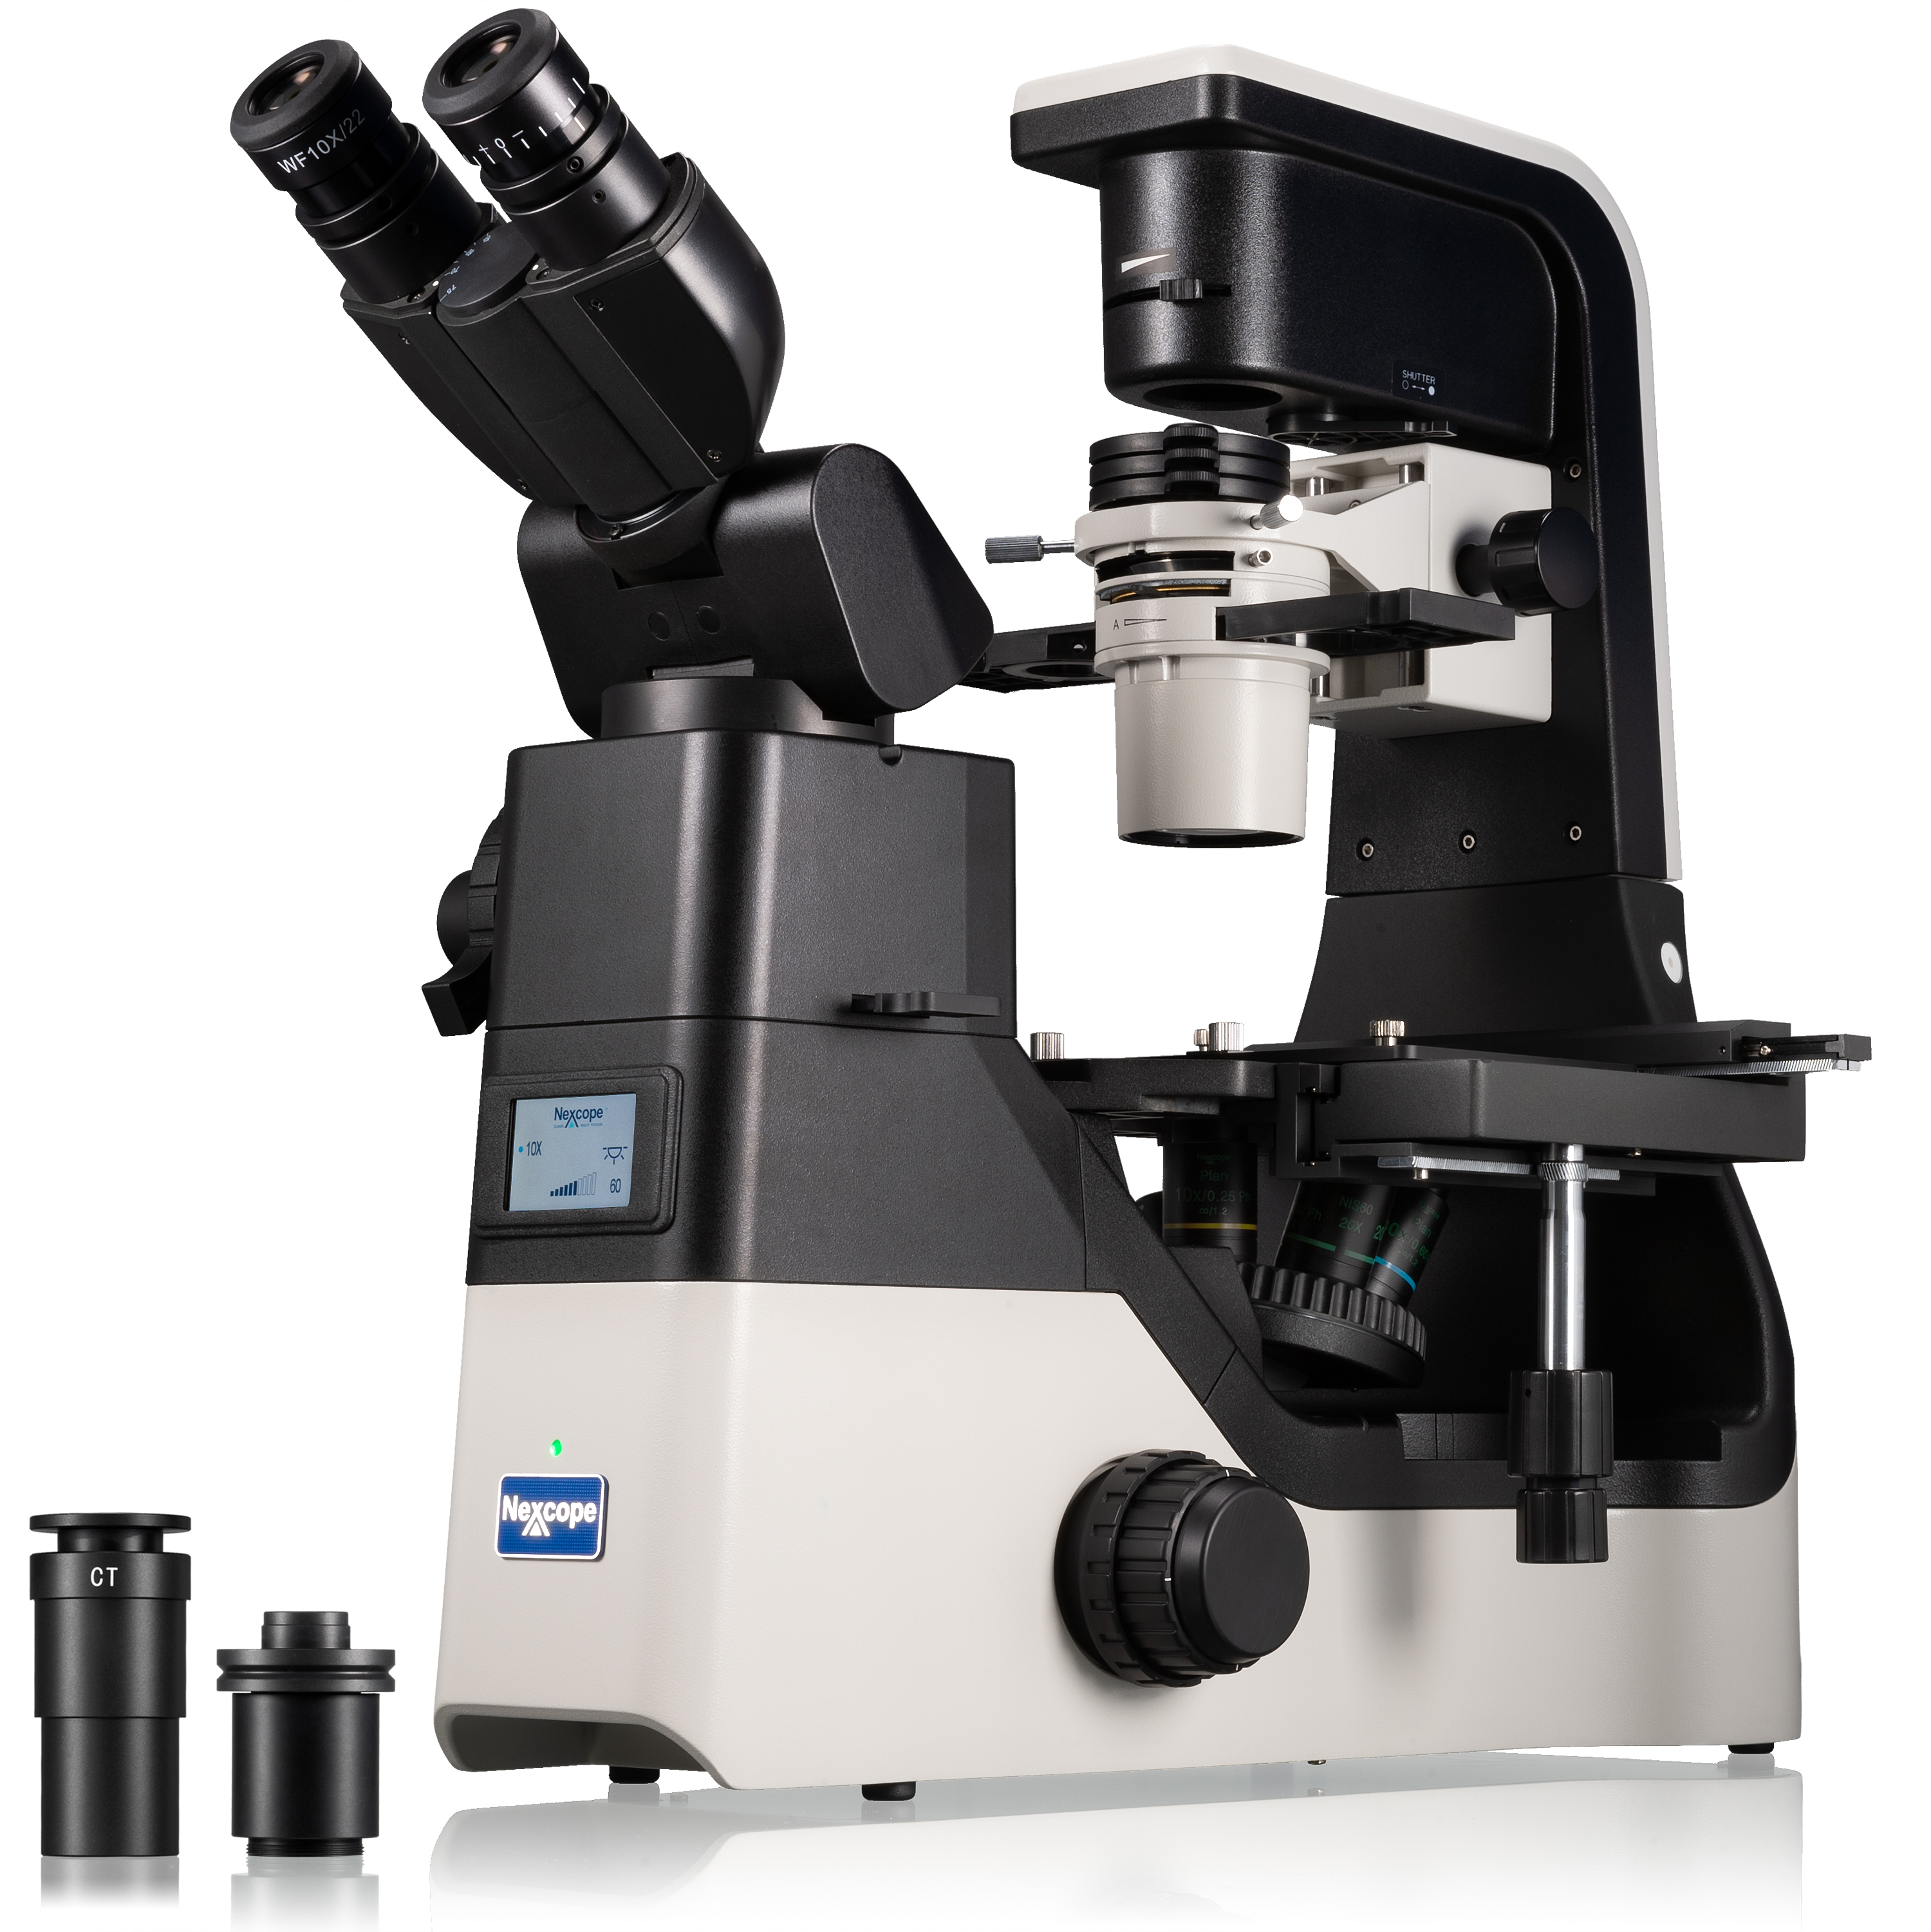 Nexcope NIB630 inverses Forschungsmikroskop mit kippbarer Beleuchtungseinheit (Refurbished)